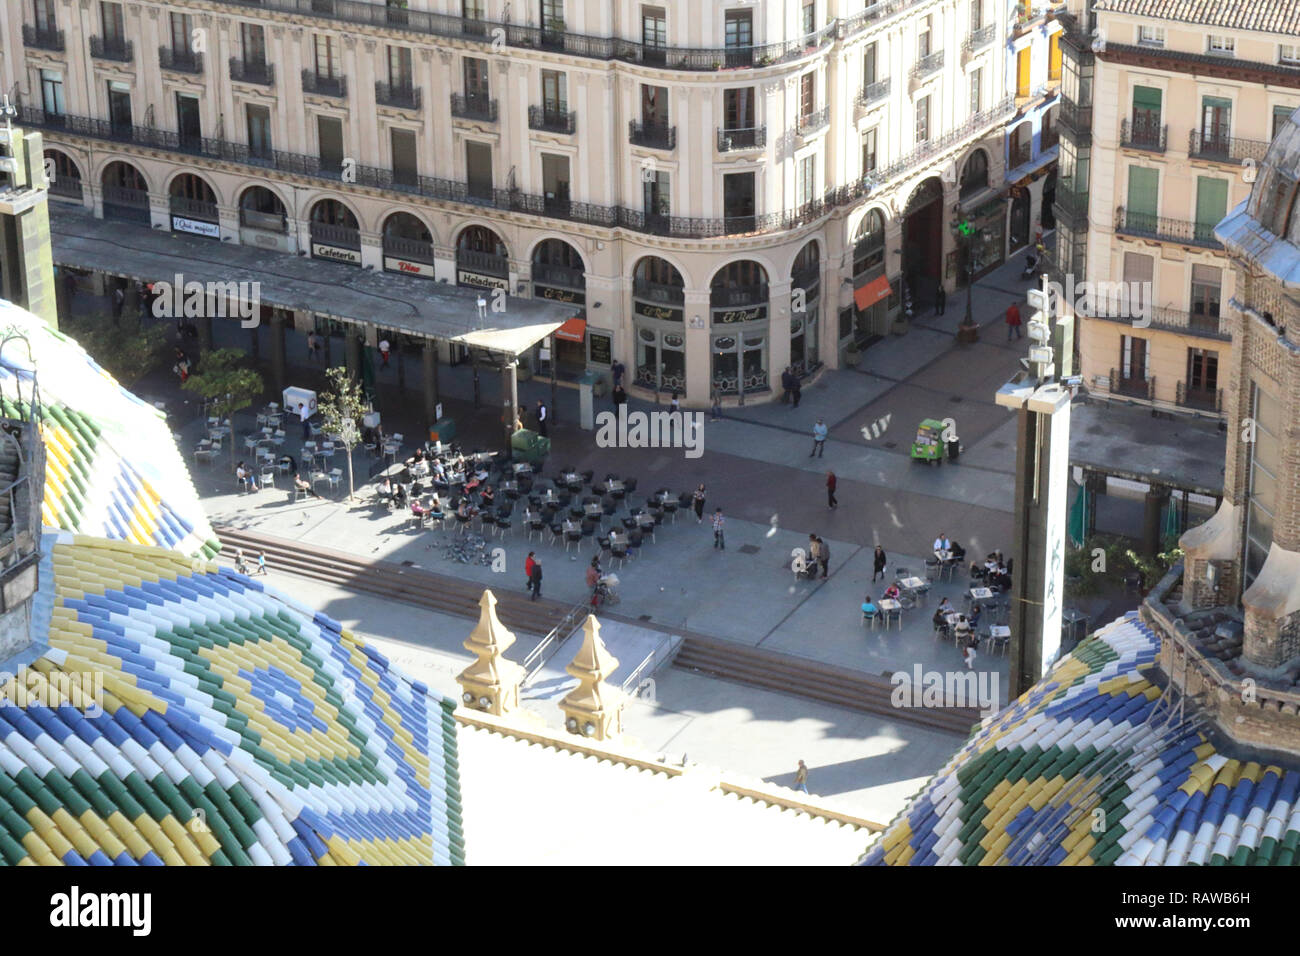 La Plaza del Pilar quadrato come visto dalla cattedrale di Pilar, con alcune terrazze, bar, caffetterie e gente che cammina, in Zaragoza, Aragona, Spagna Foto Stock